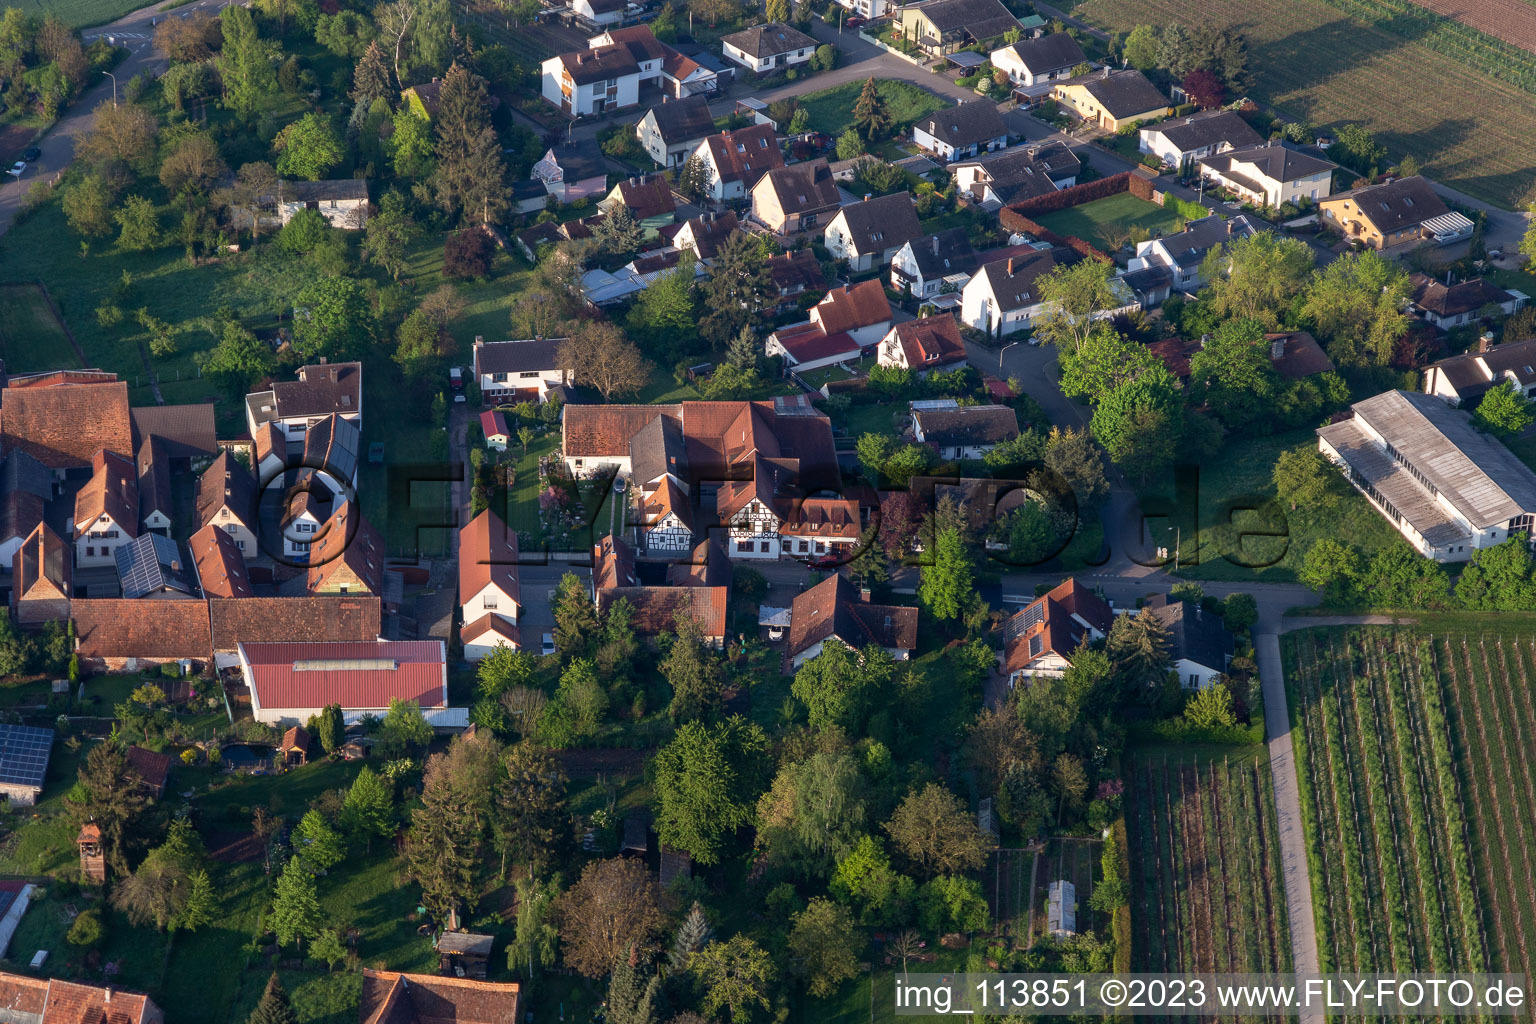 Vue aérienne de Domaine viticole et bar à vin Vogler à le quartier Heuchelheim in Heuchelheim-Klingen dans le département Rhénanie-Palatinat, Allemagne